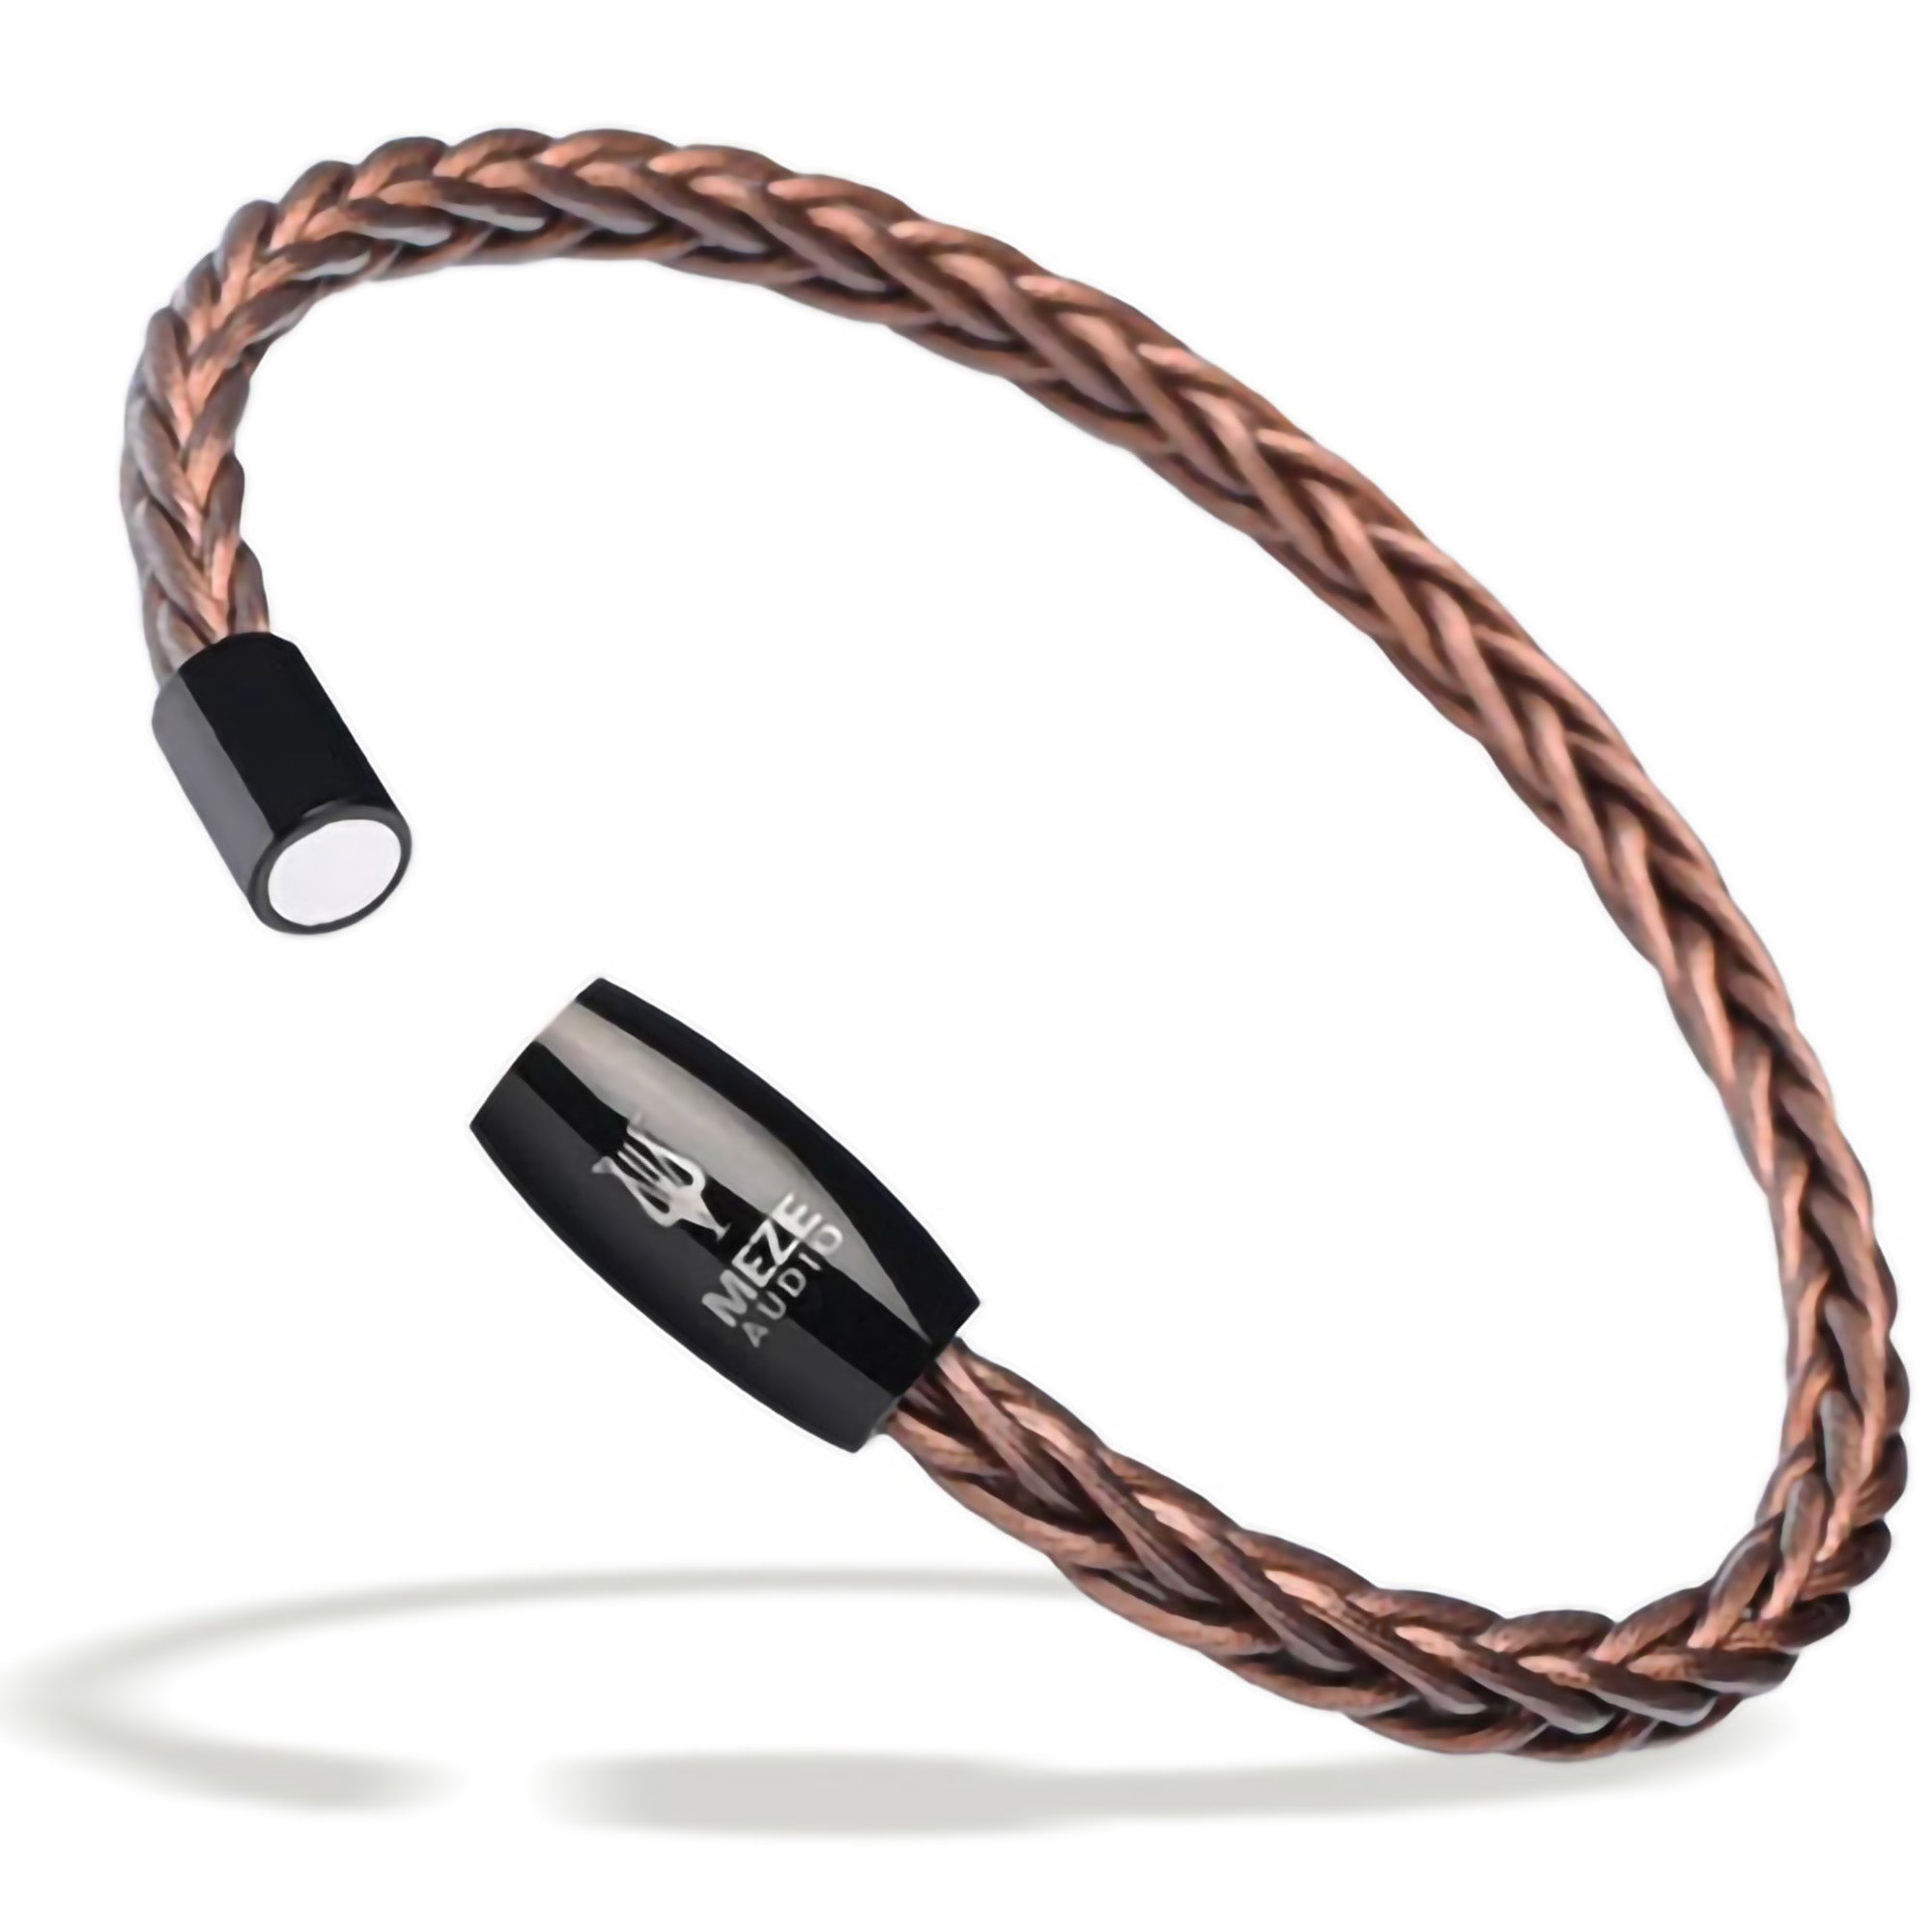 Meze Audio Handcrafted Bracelet